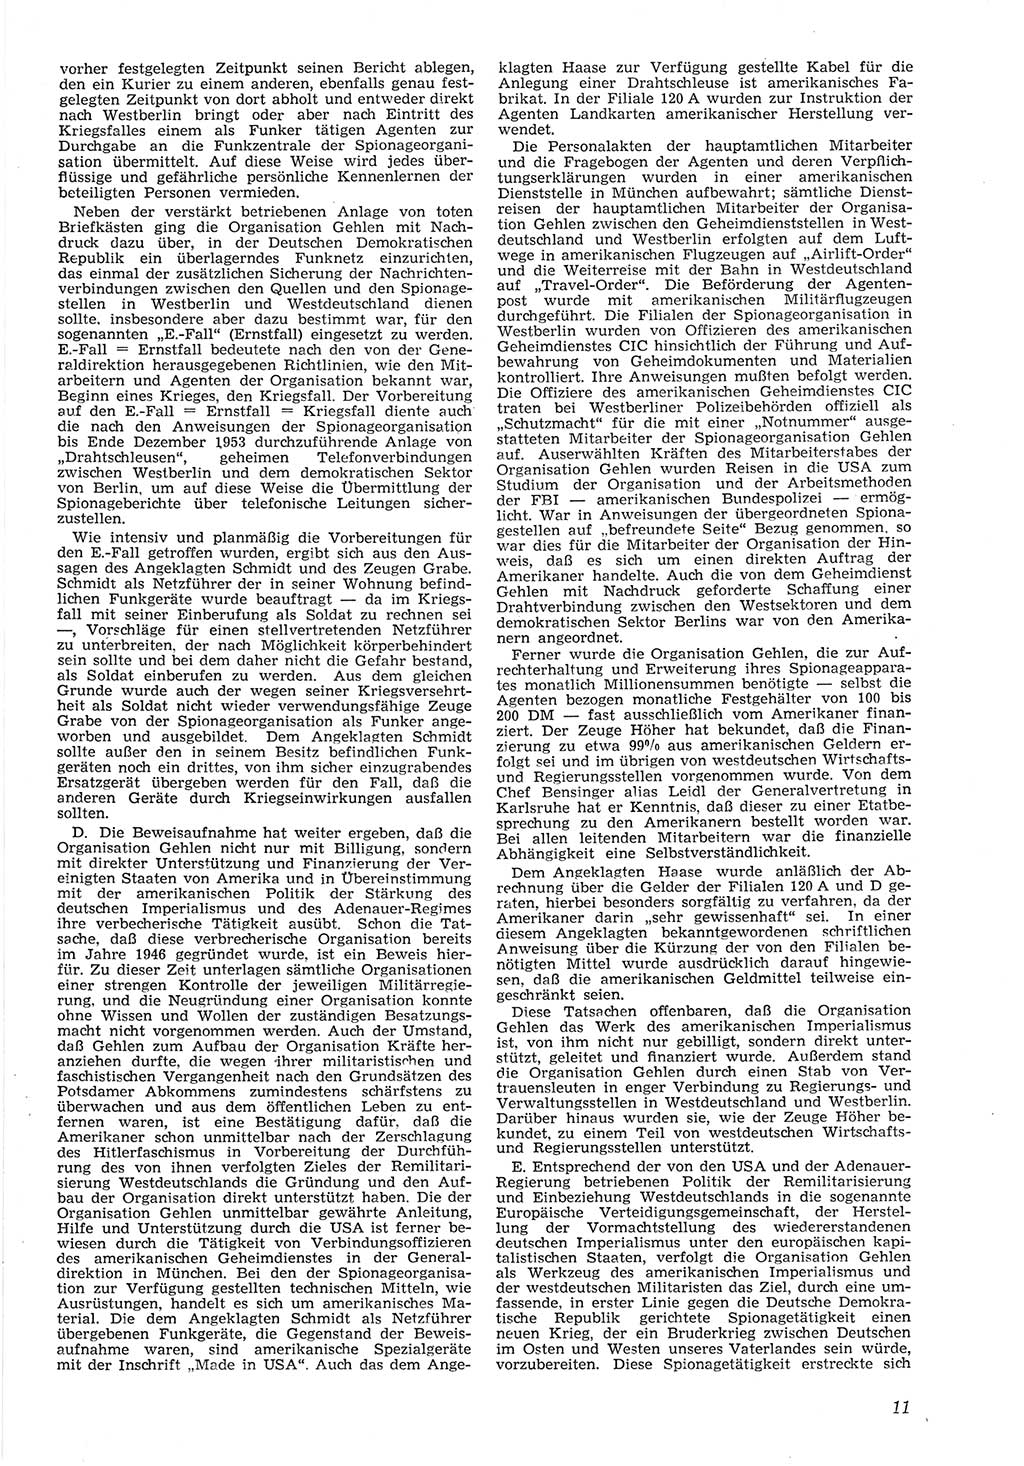 Neue Justiz (NJ), Zeitschrift für Recht und Rechtswissenschaft [Deutsche Demokratische Republik (DDR)], 8. Jahrgang 1954, Seite 11 (NJ DDR 1954, S. 11)